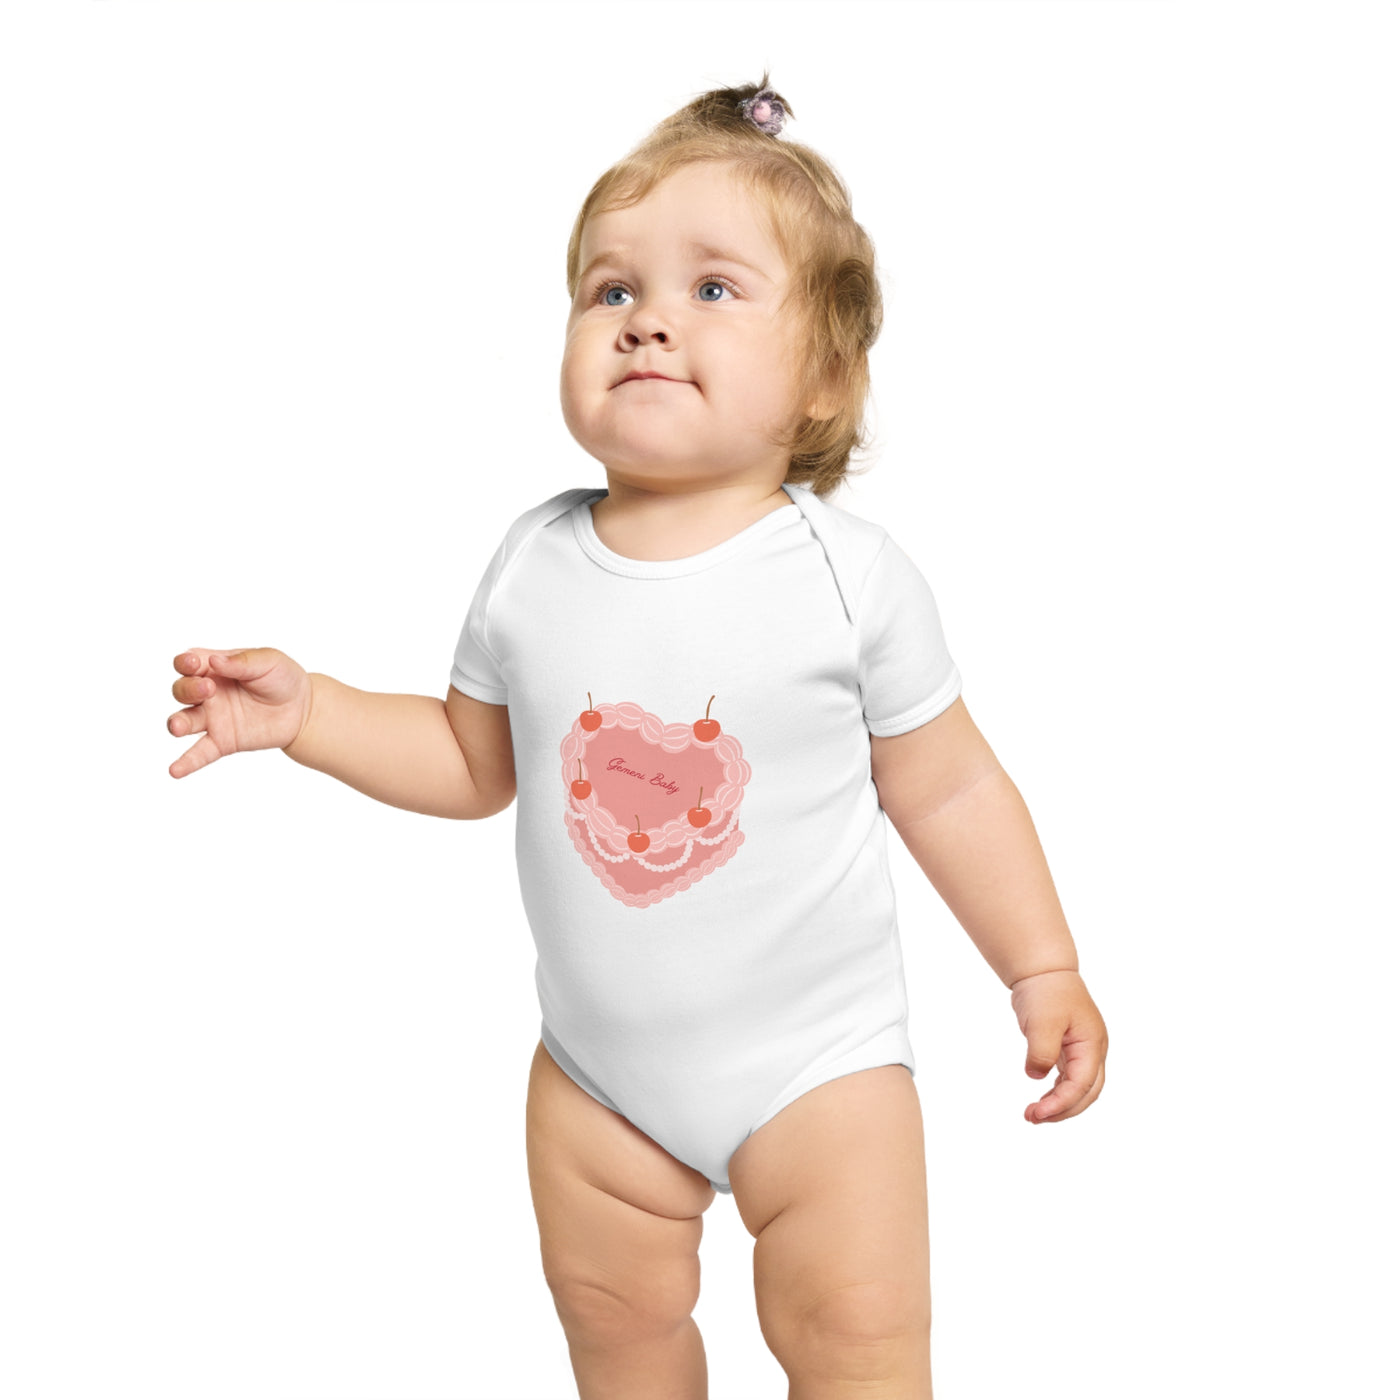 Gemini Short Sleeve Baby Bodysuit